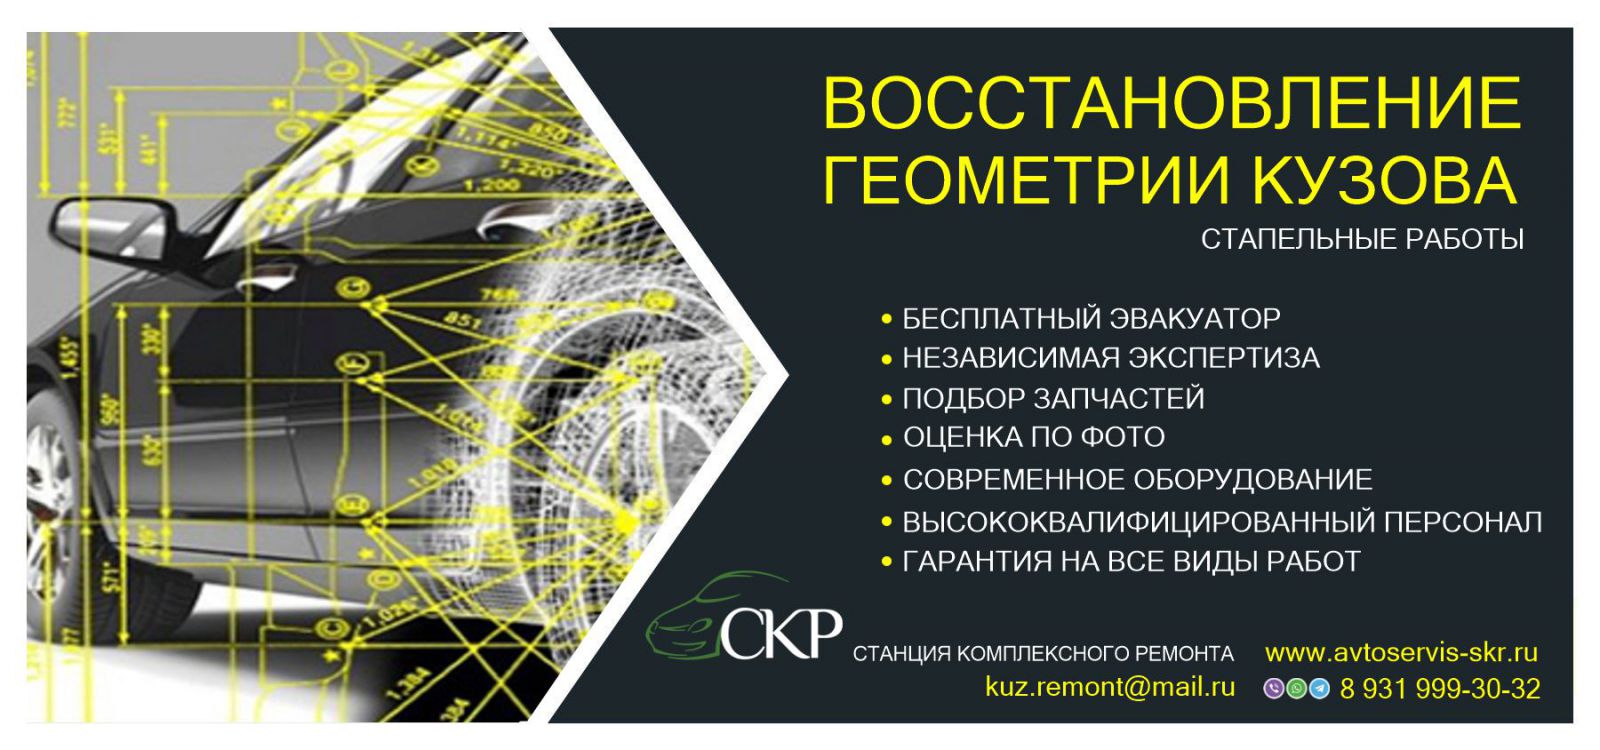 Восстановление геометрии кузова в СПб